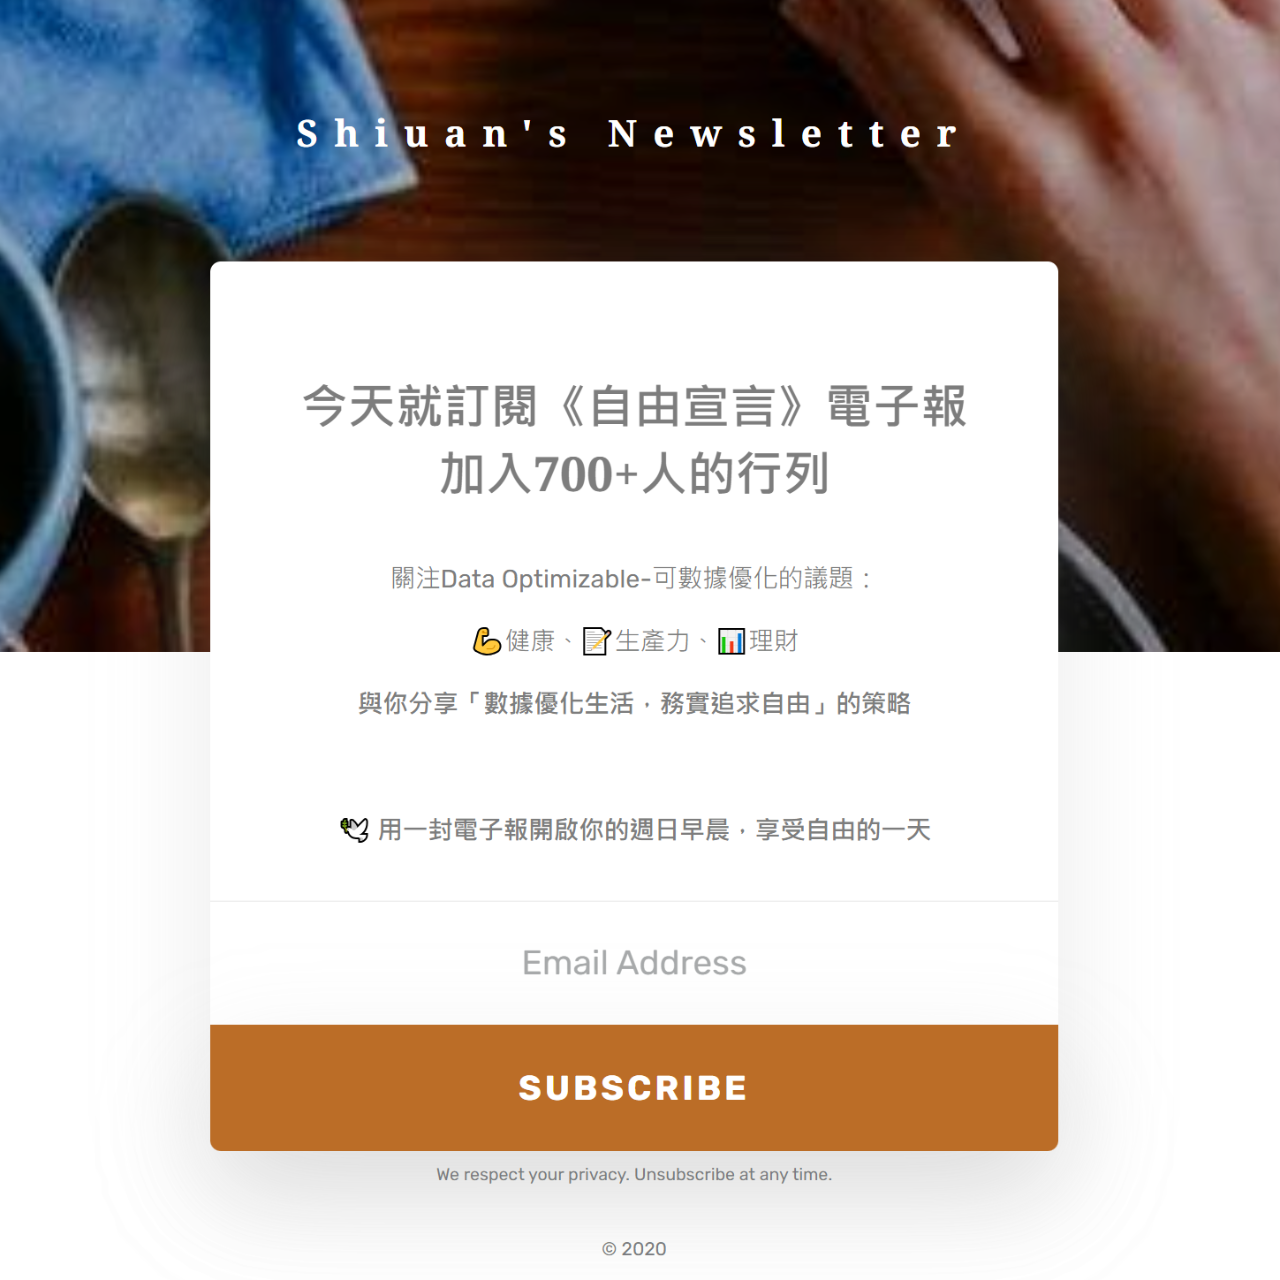 梁文宣 (freeshiuan) 今天就訂閱《自由宣言》電子報加入700+人的行列